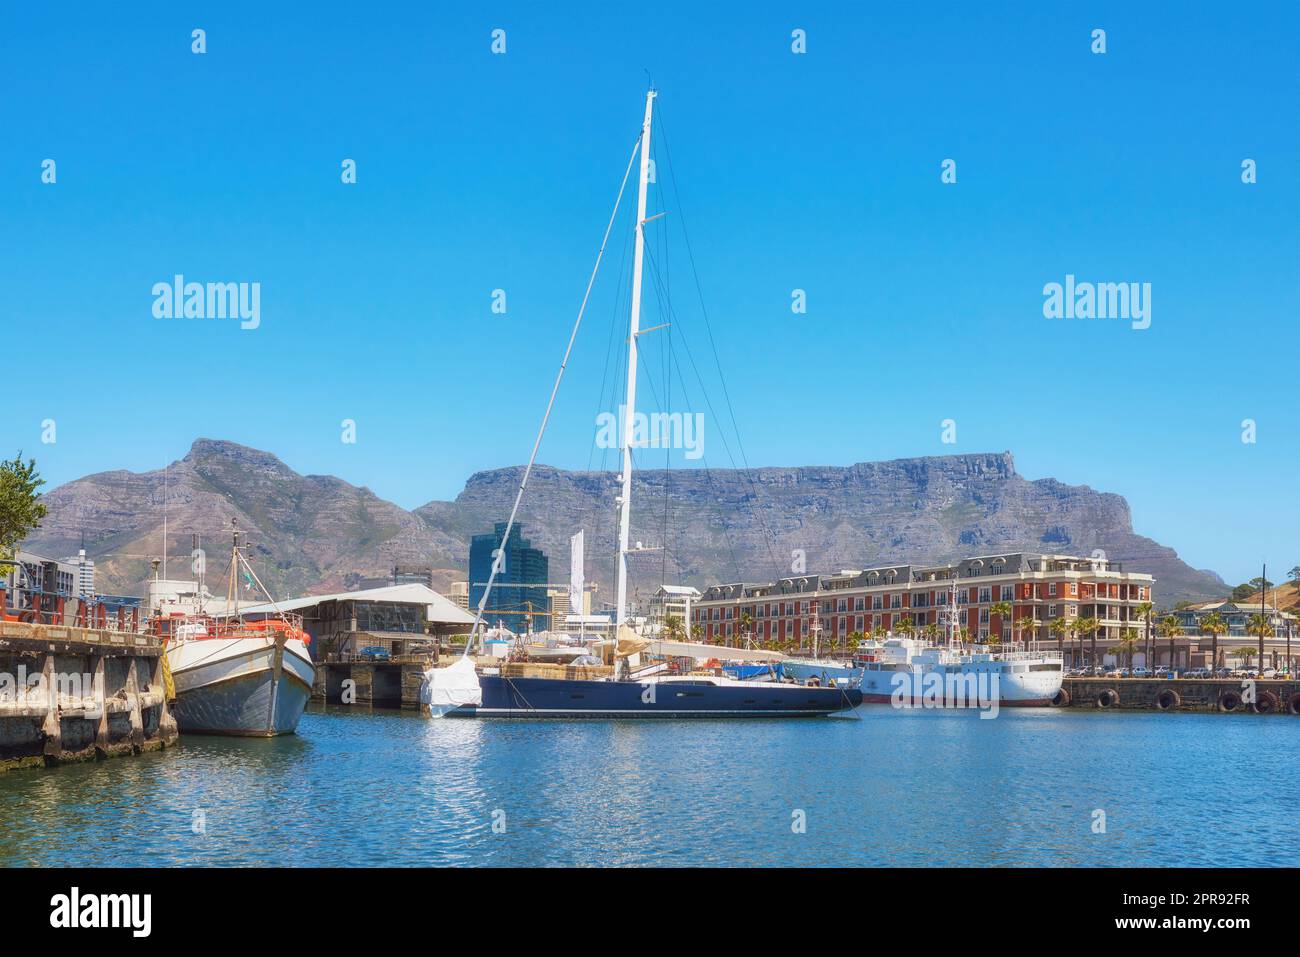 Segelboote legten an einem Hafen an, mit Tafelberg im Hintergrund vor blauem Himmel mit Kopierraum. Landschaftlich reizvolle Hafenlandschaft an einem Yachthafen. Seeschiffe für Reise und Tourismus Stockfoto